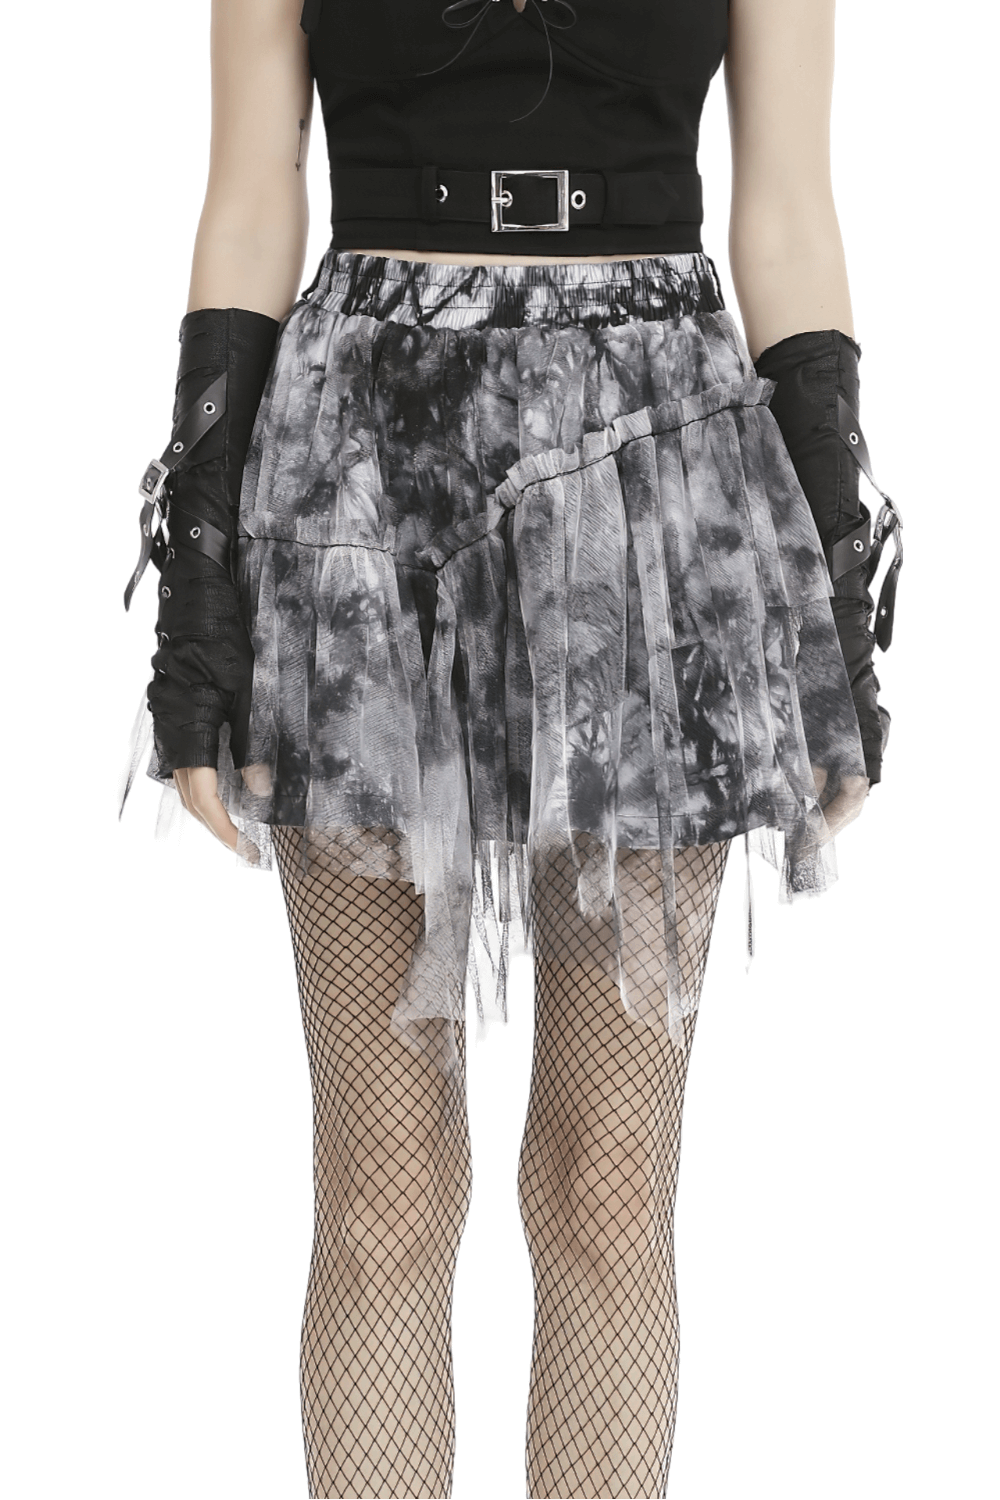 Chic Marble Print Skirt for Effortless Elegance